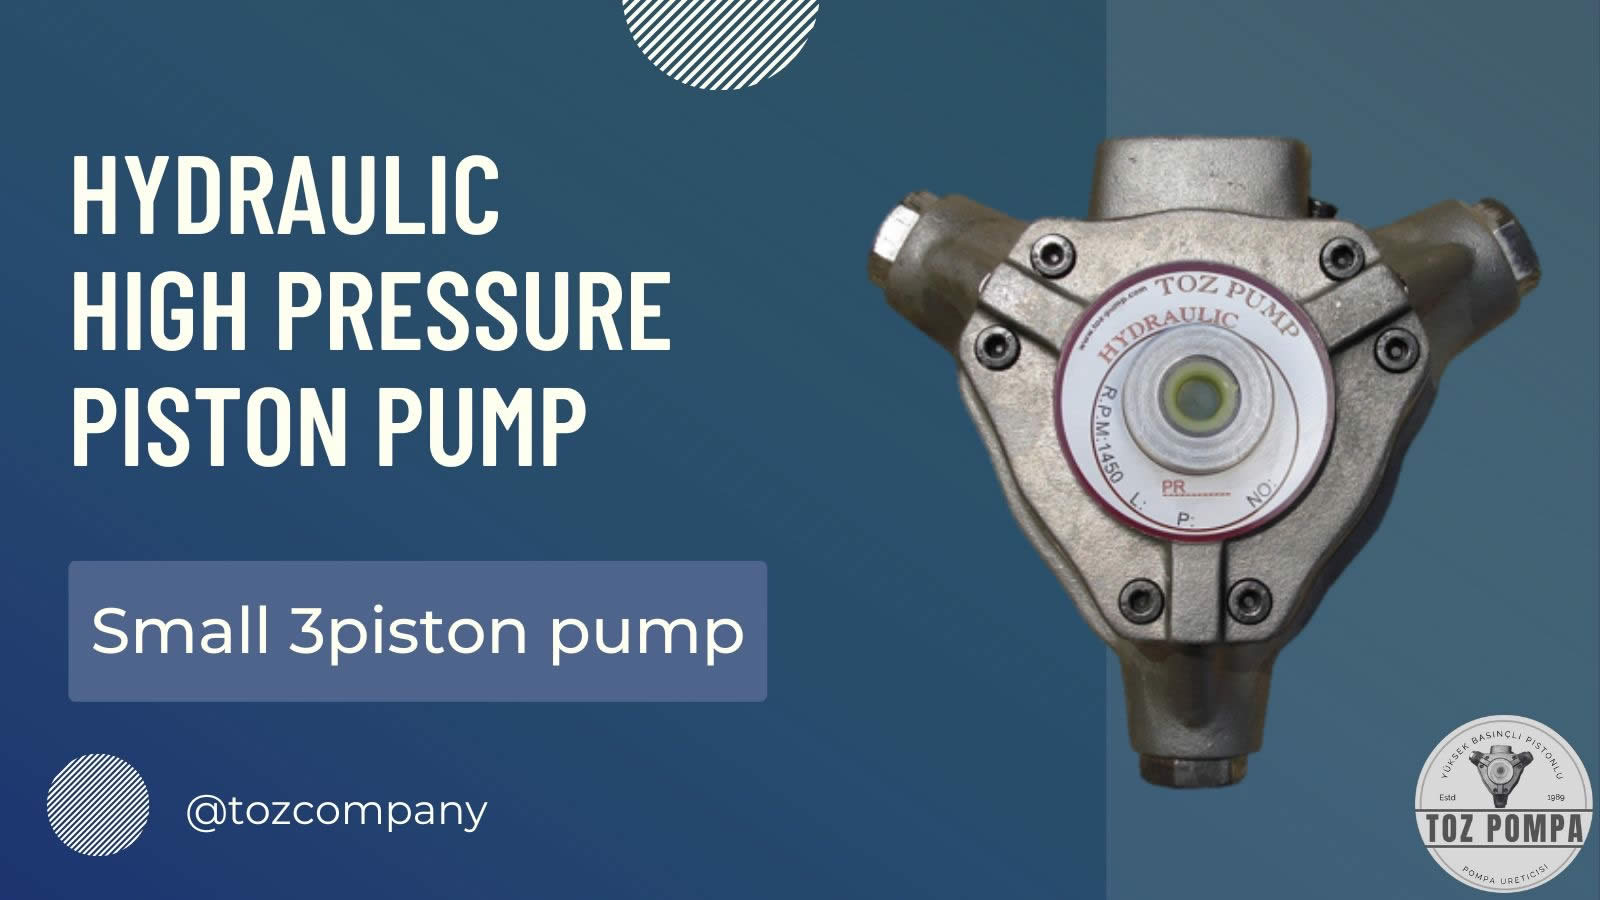 Small 3 piston pump